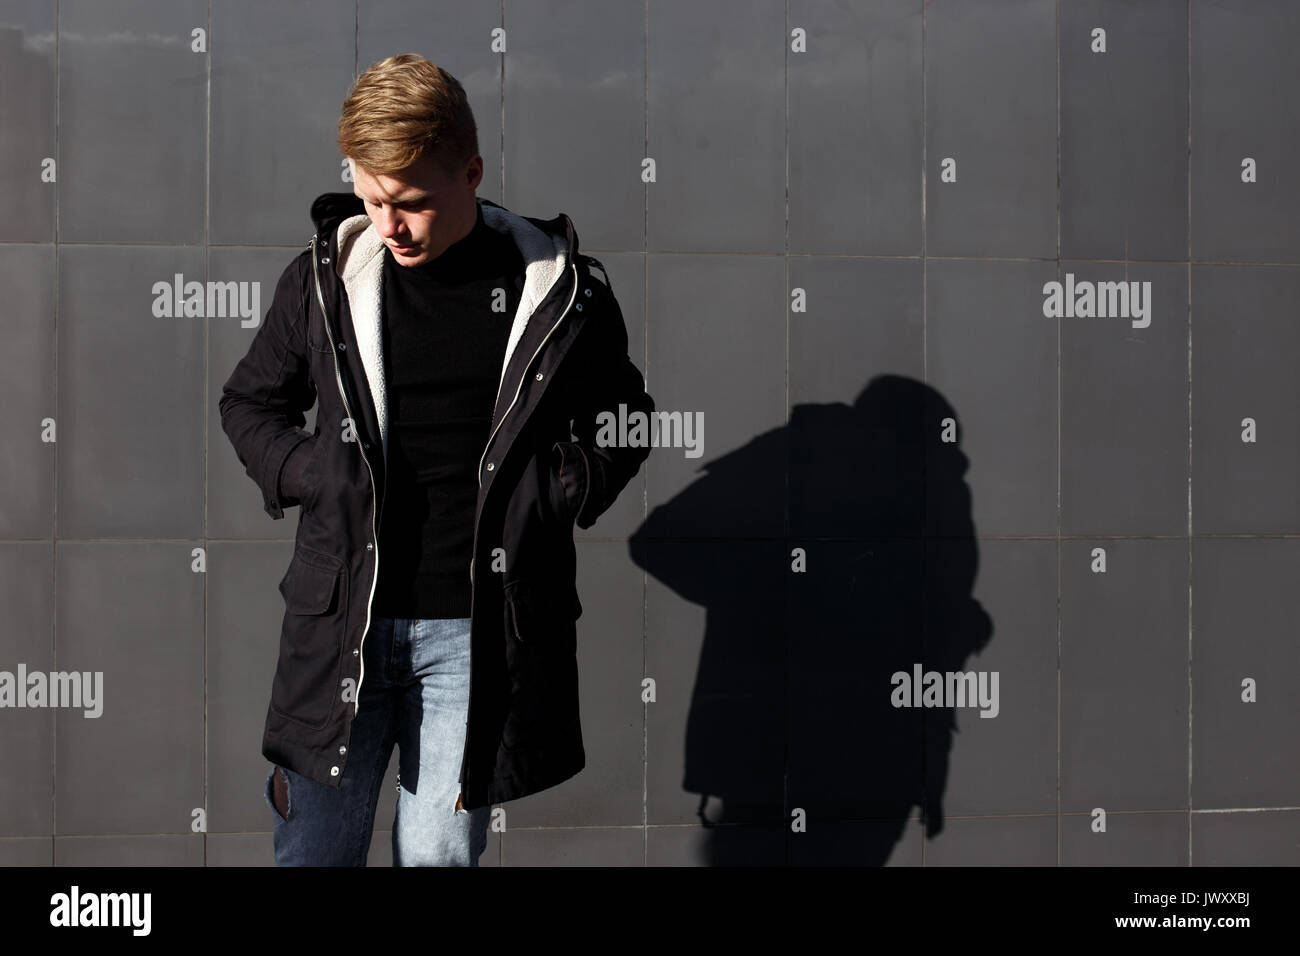 Junge stilvolle rothaarige Mann im trendigen Outfit gegen städtischen Hintergrund posiert Stockfoto